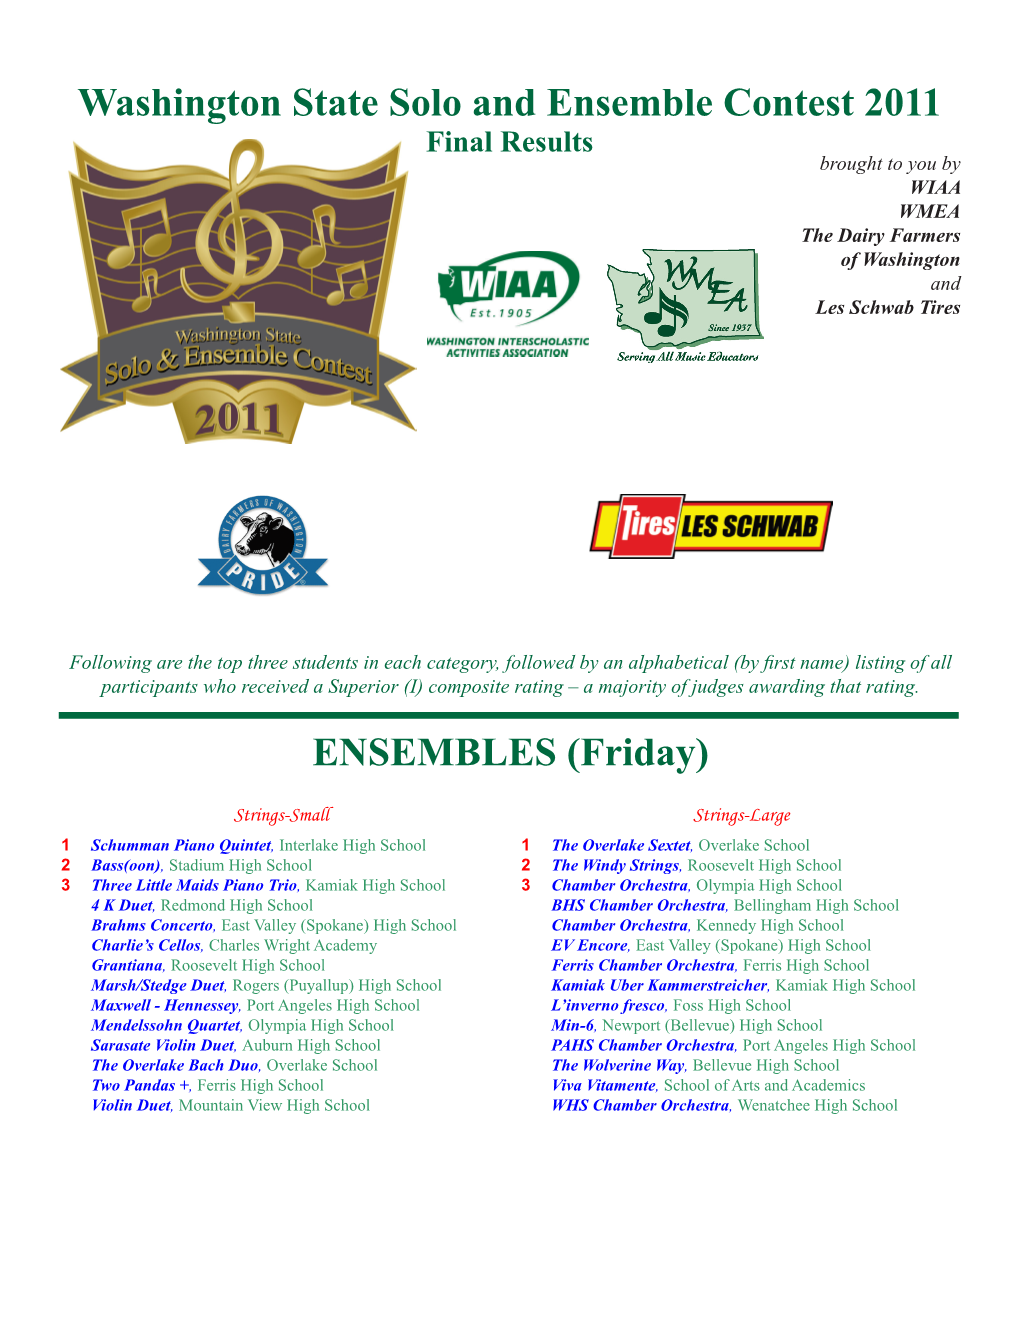 Washington State Solo and Ensemble Contest 2011 ENSEMBLES